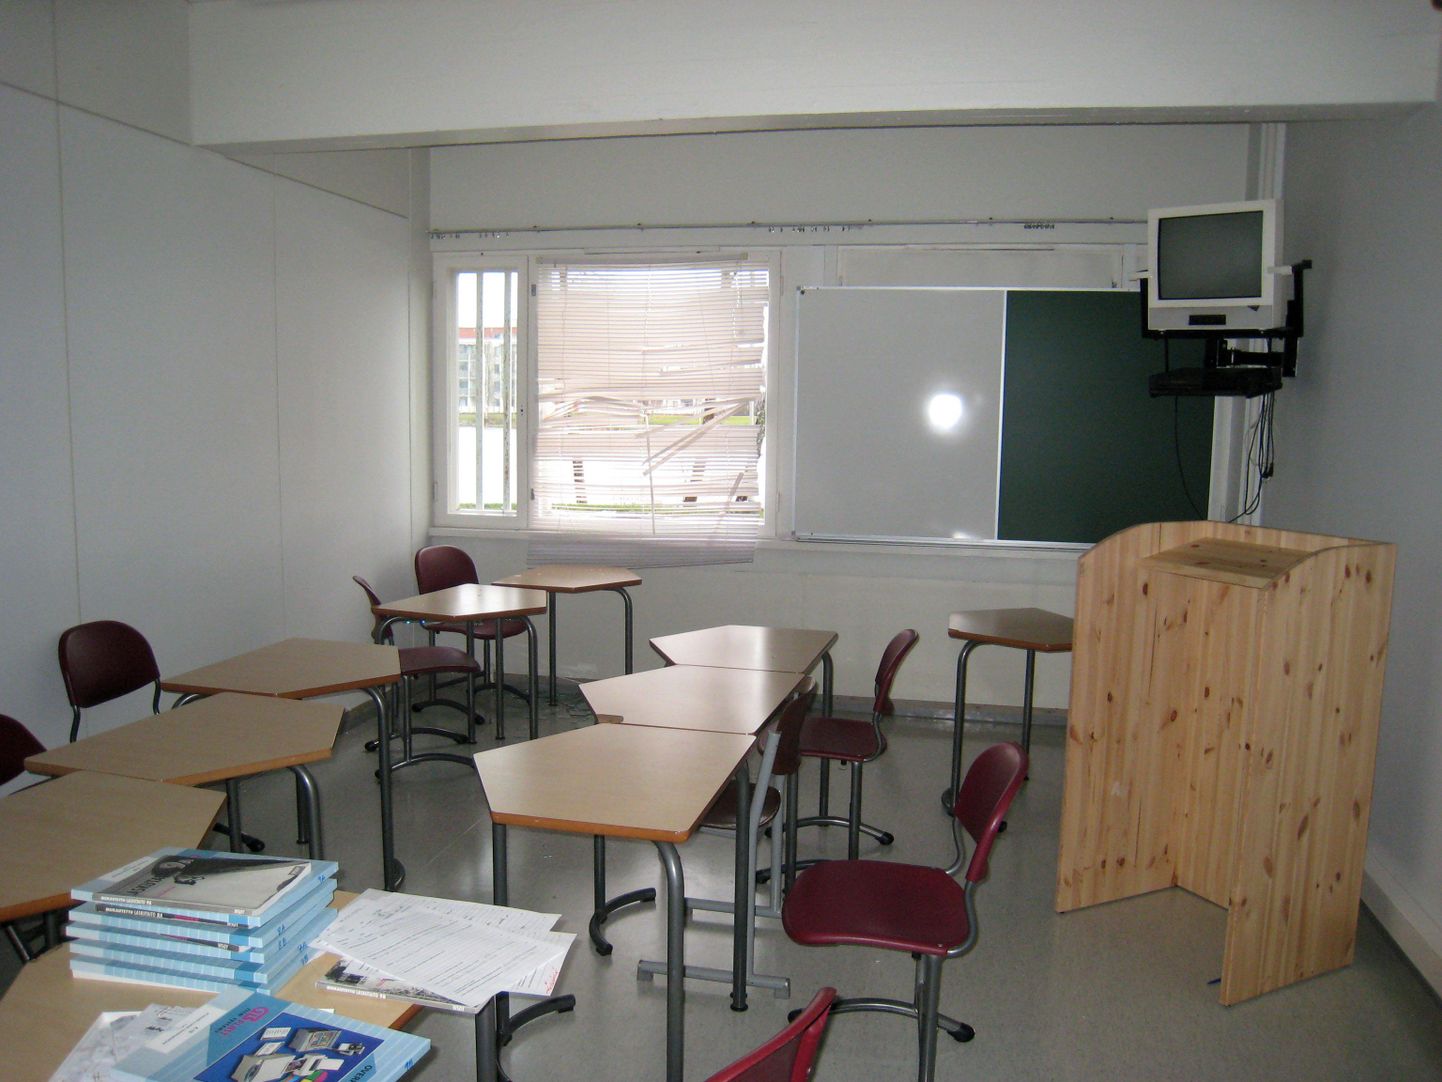 Soome kooli klassiruum.